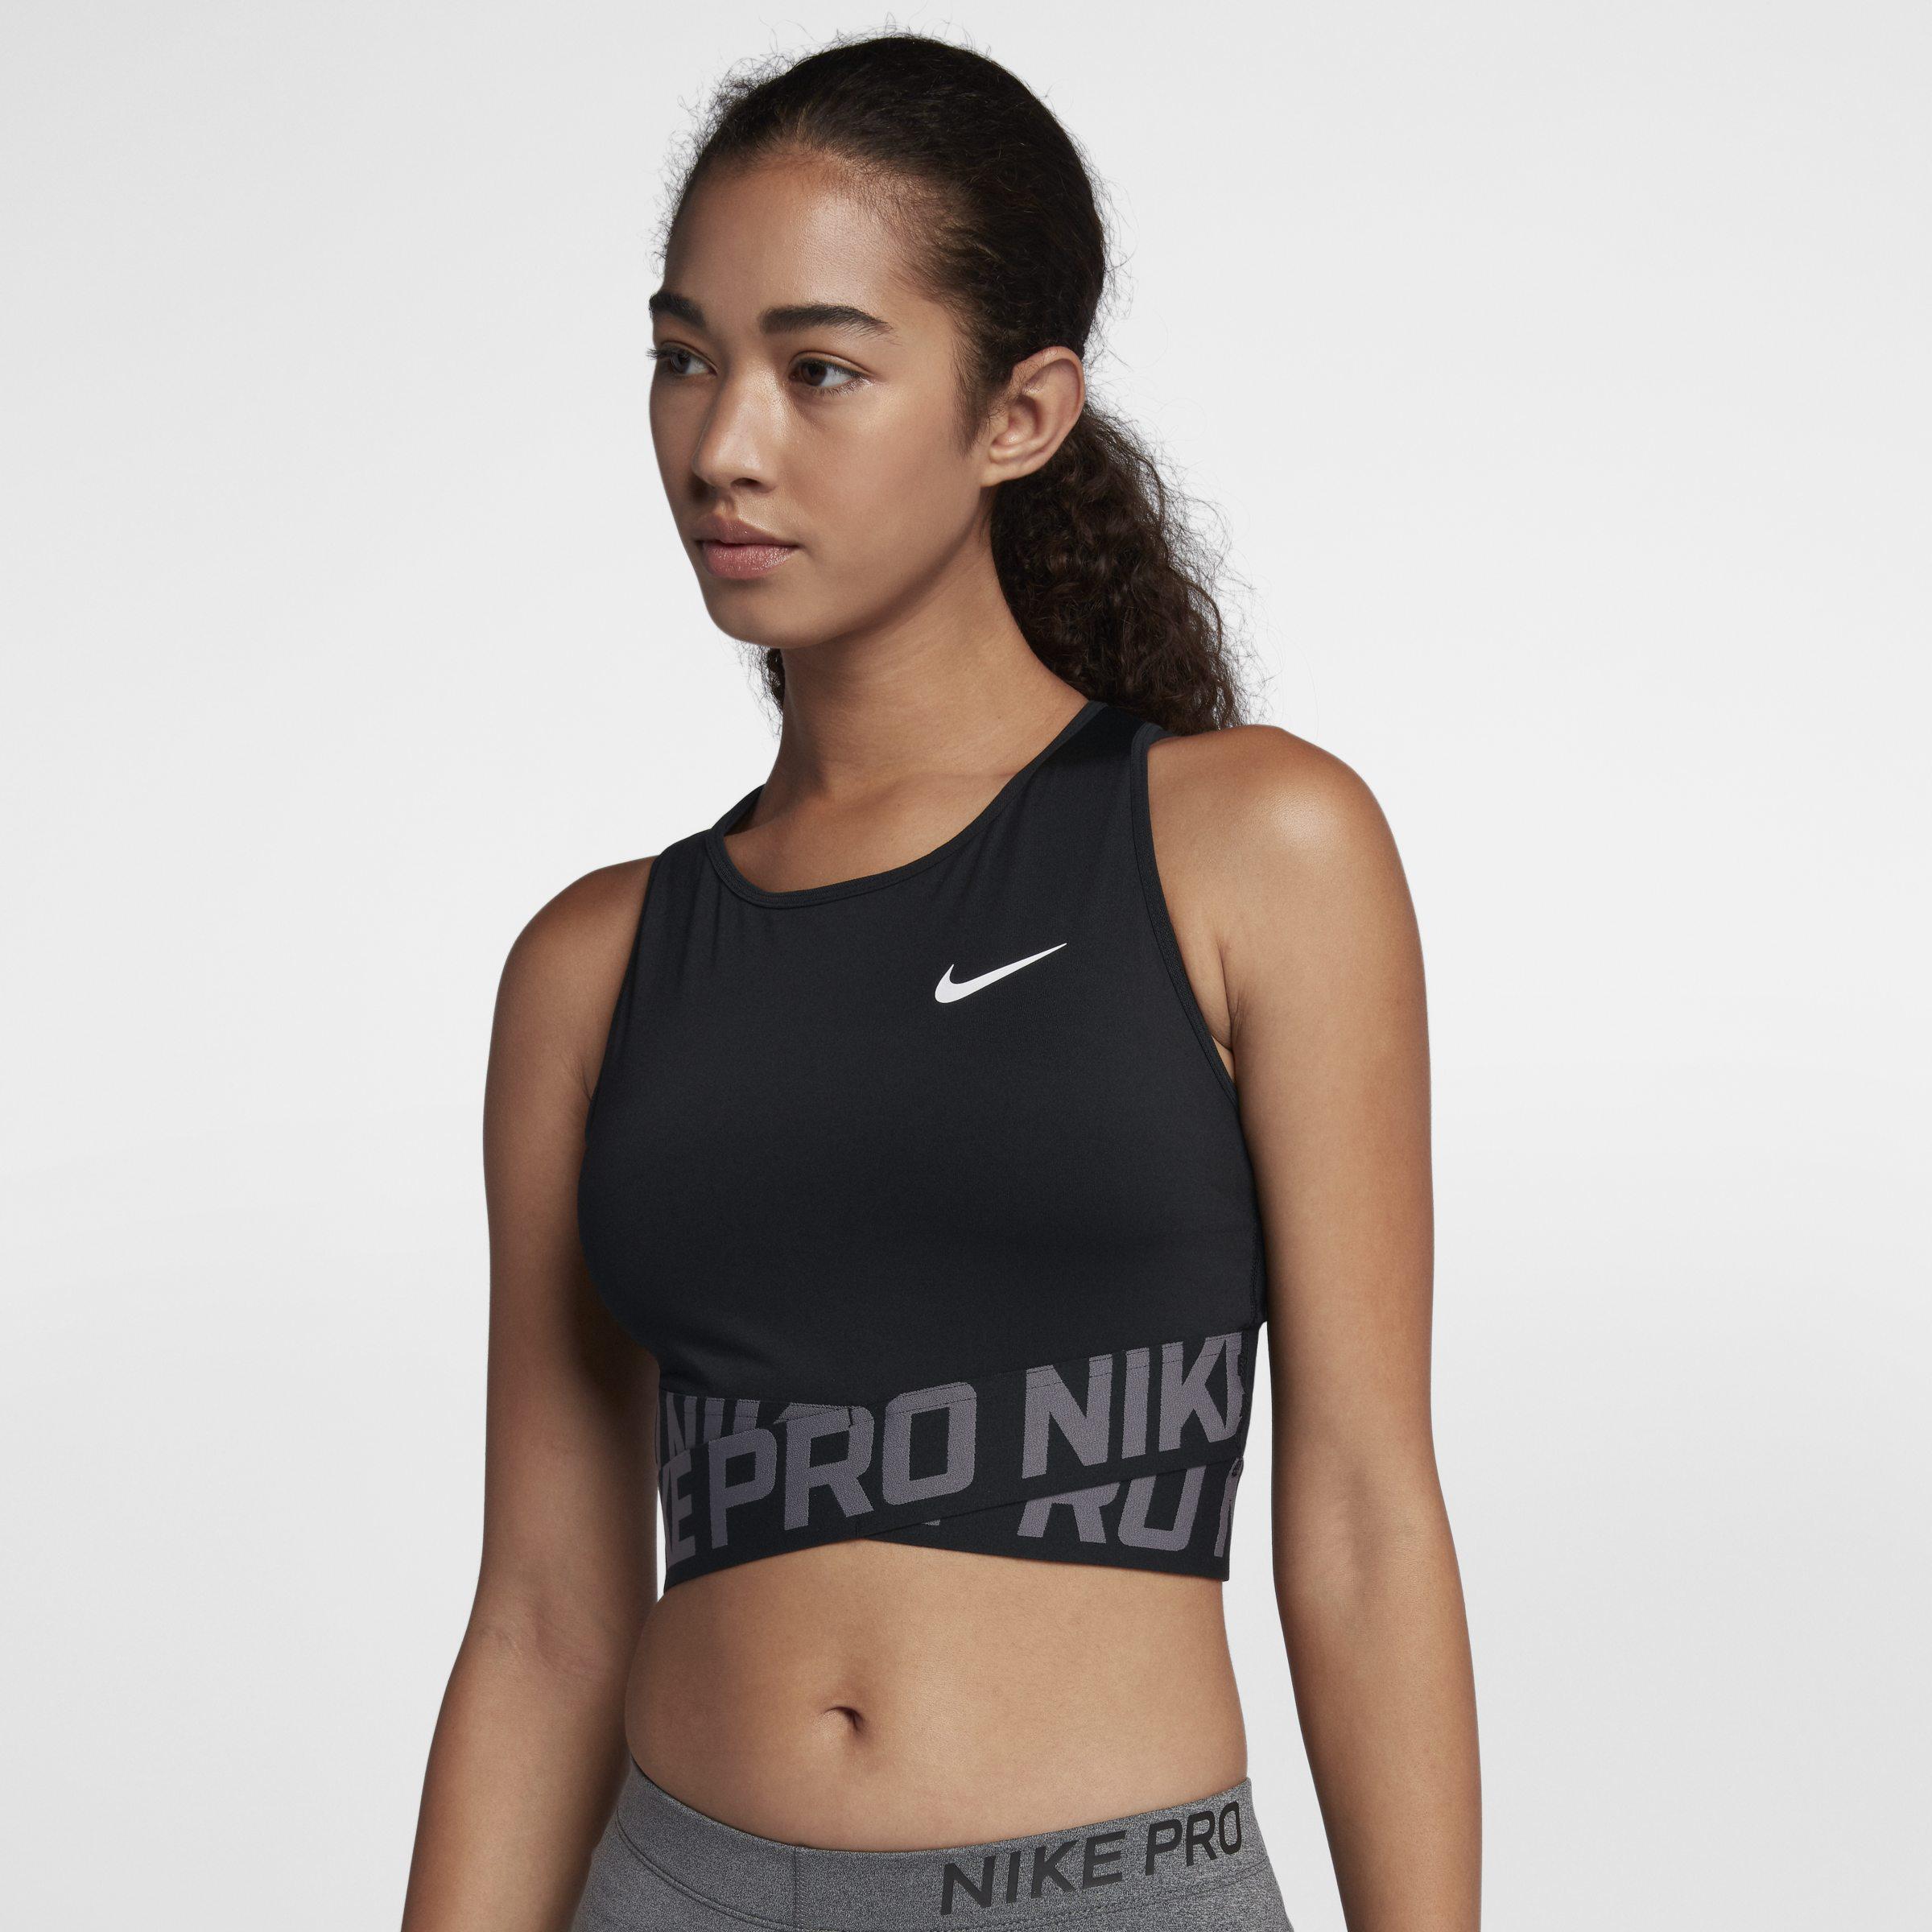 Топики найк. Nike Pro Intertwist майка. Womens femme Nike топ. Nike Nike Pro. Майка Nike Pro Tank женская черная.